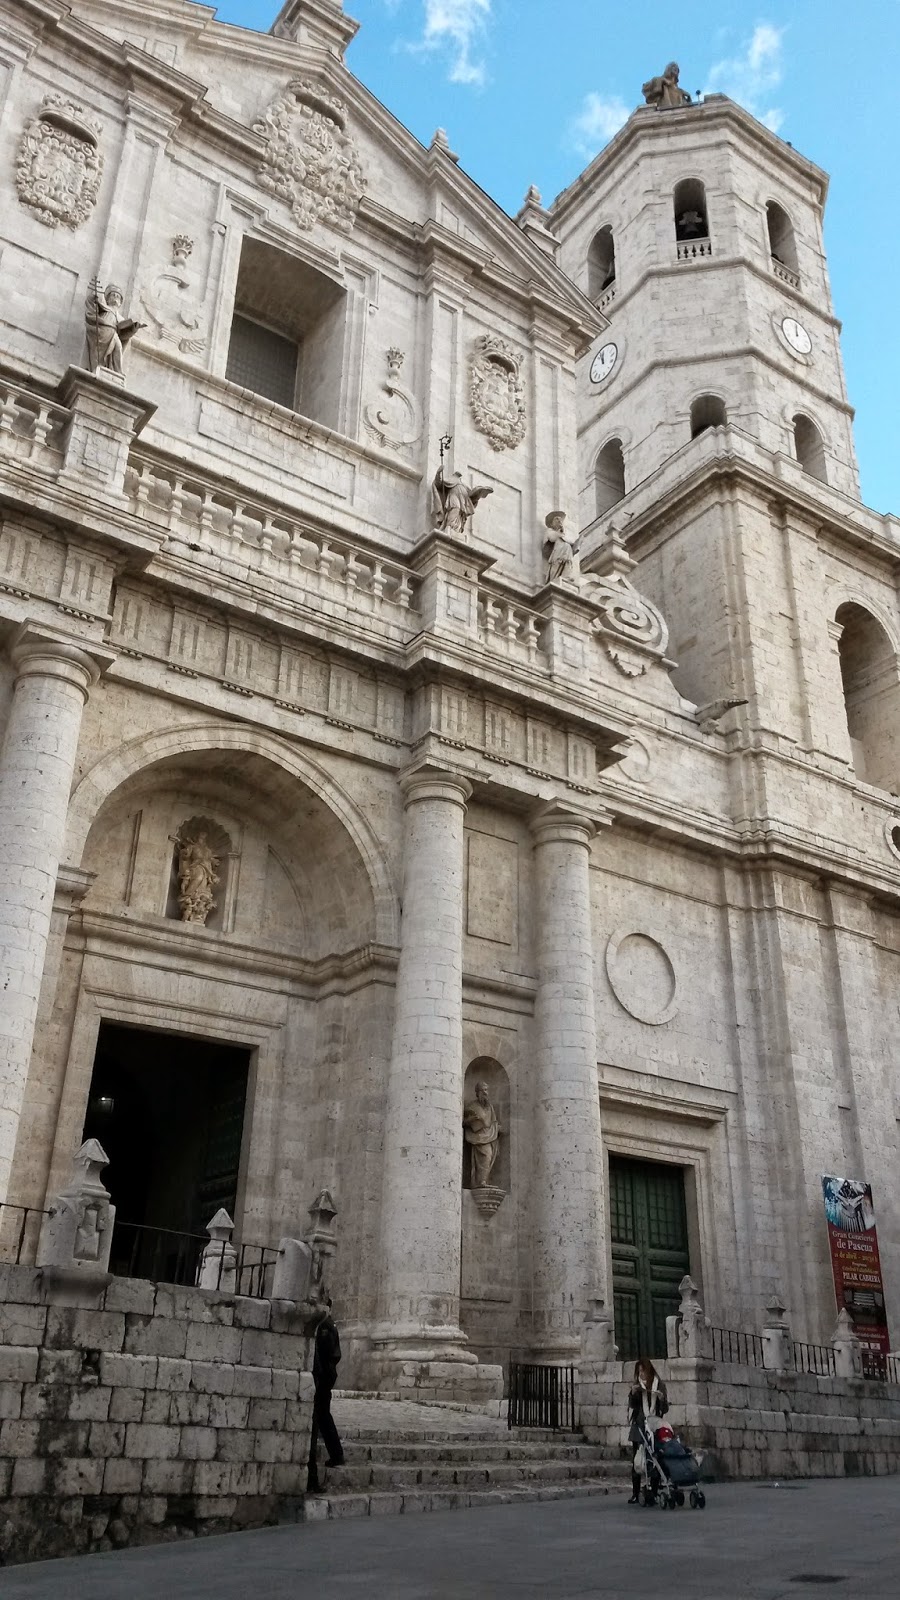 Fachada de la Catedral del Valladolid, conocida también como "La Inconclusa".